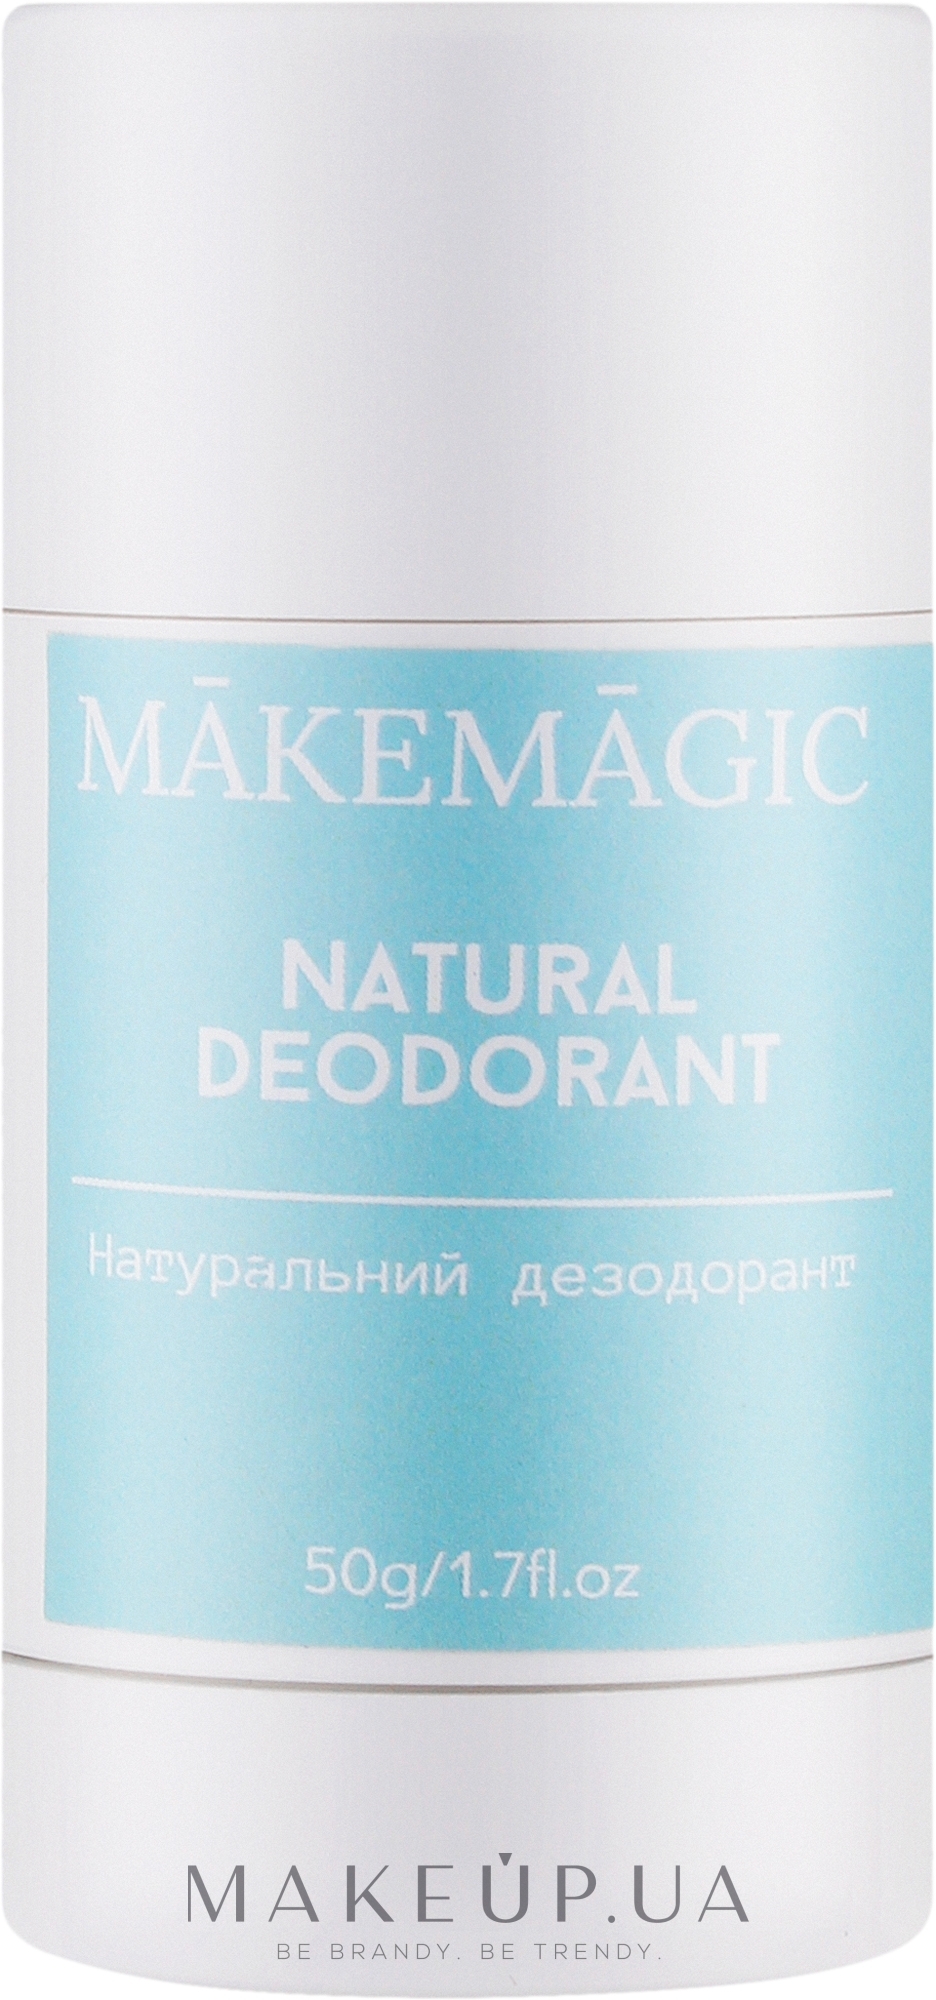 Натуральний дезодорант для тіла - Makemagic Natural Deodorant — фото 50g